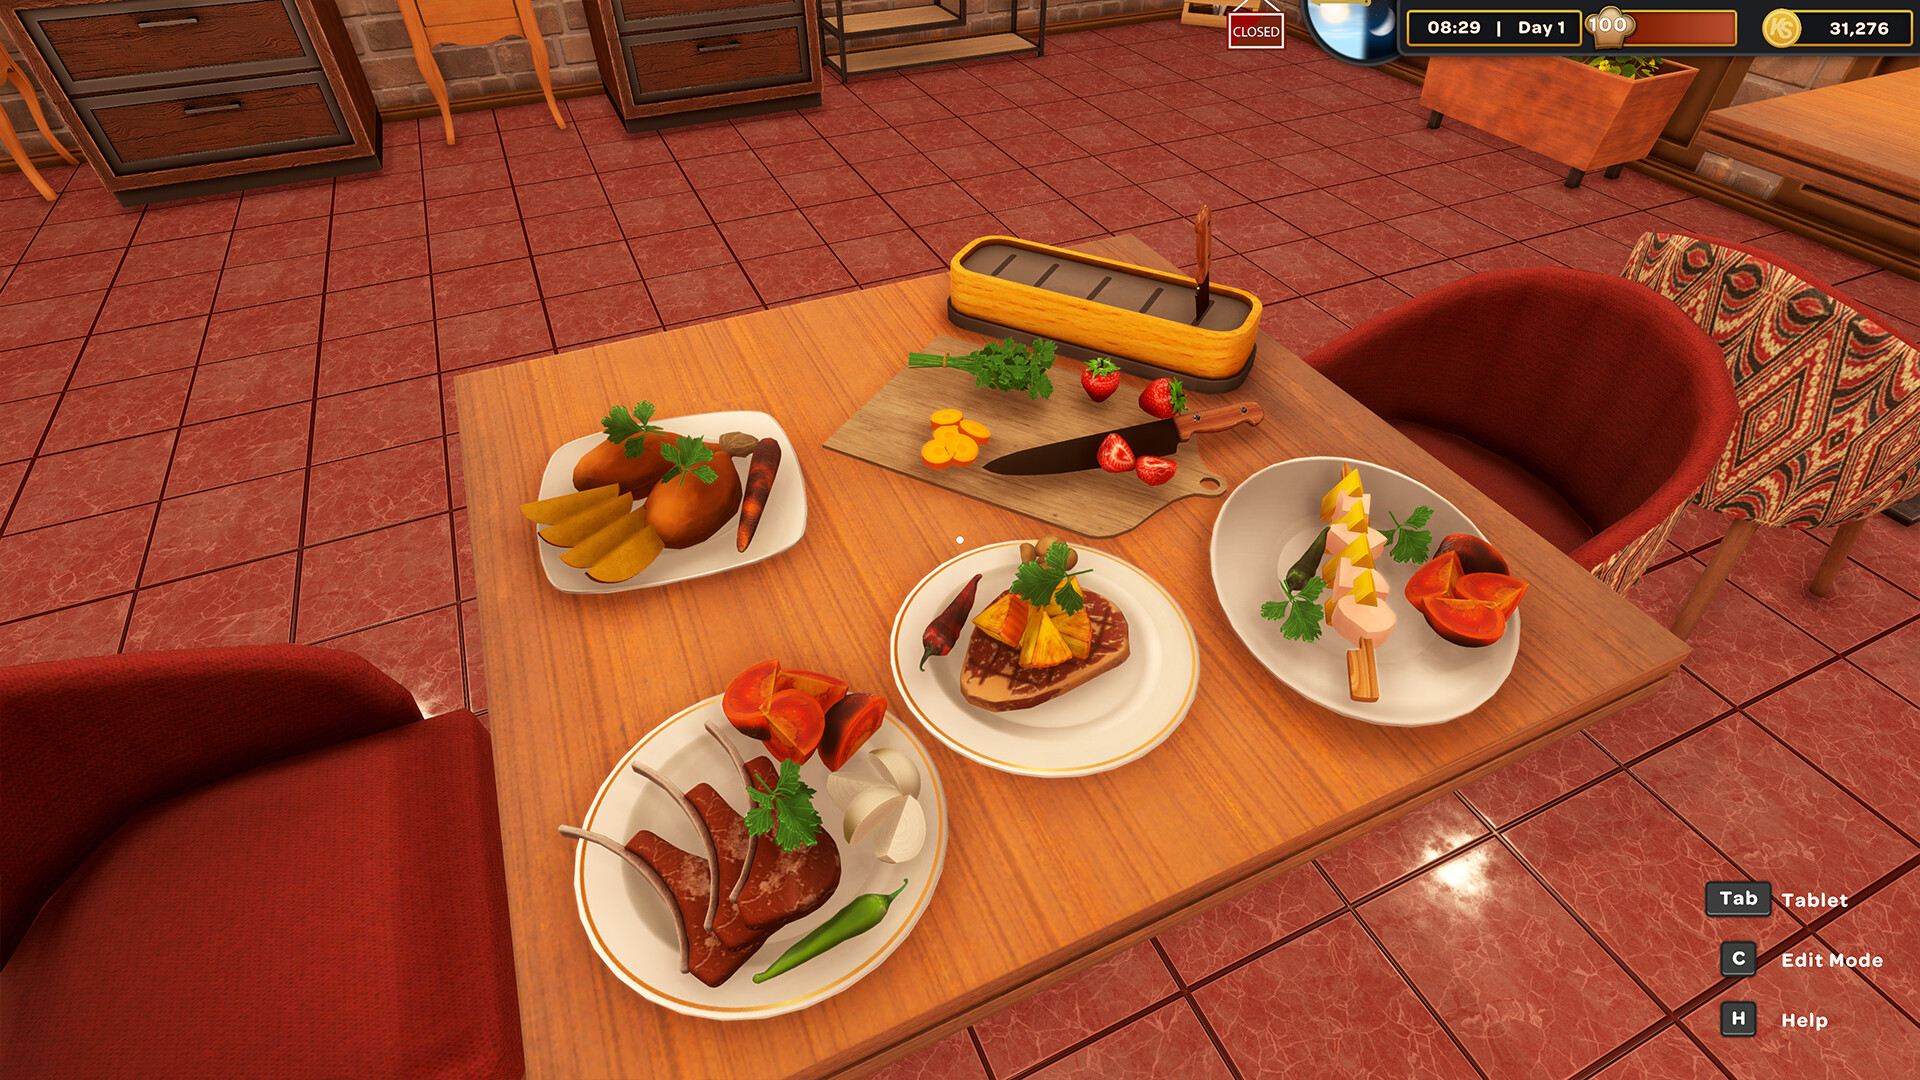 Kebab Chefs! - Restaurant Simulator Steam Altergift [USD 23.34]